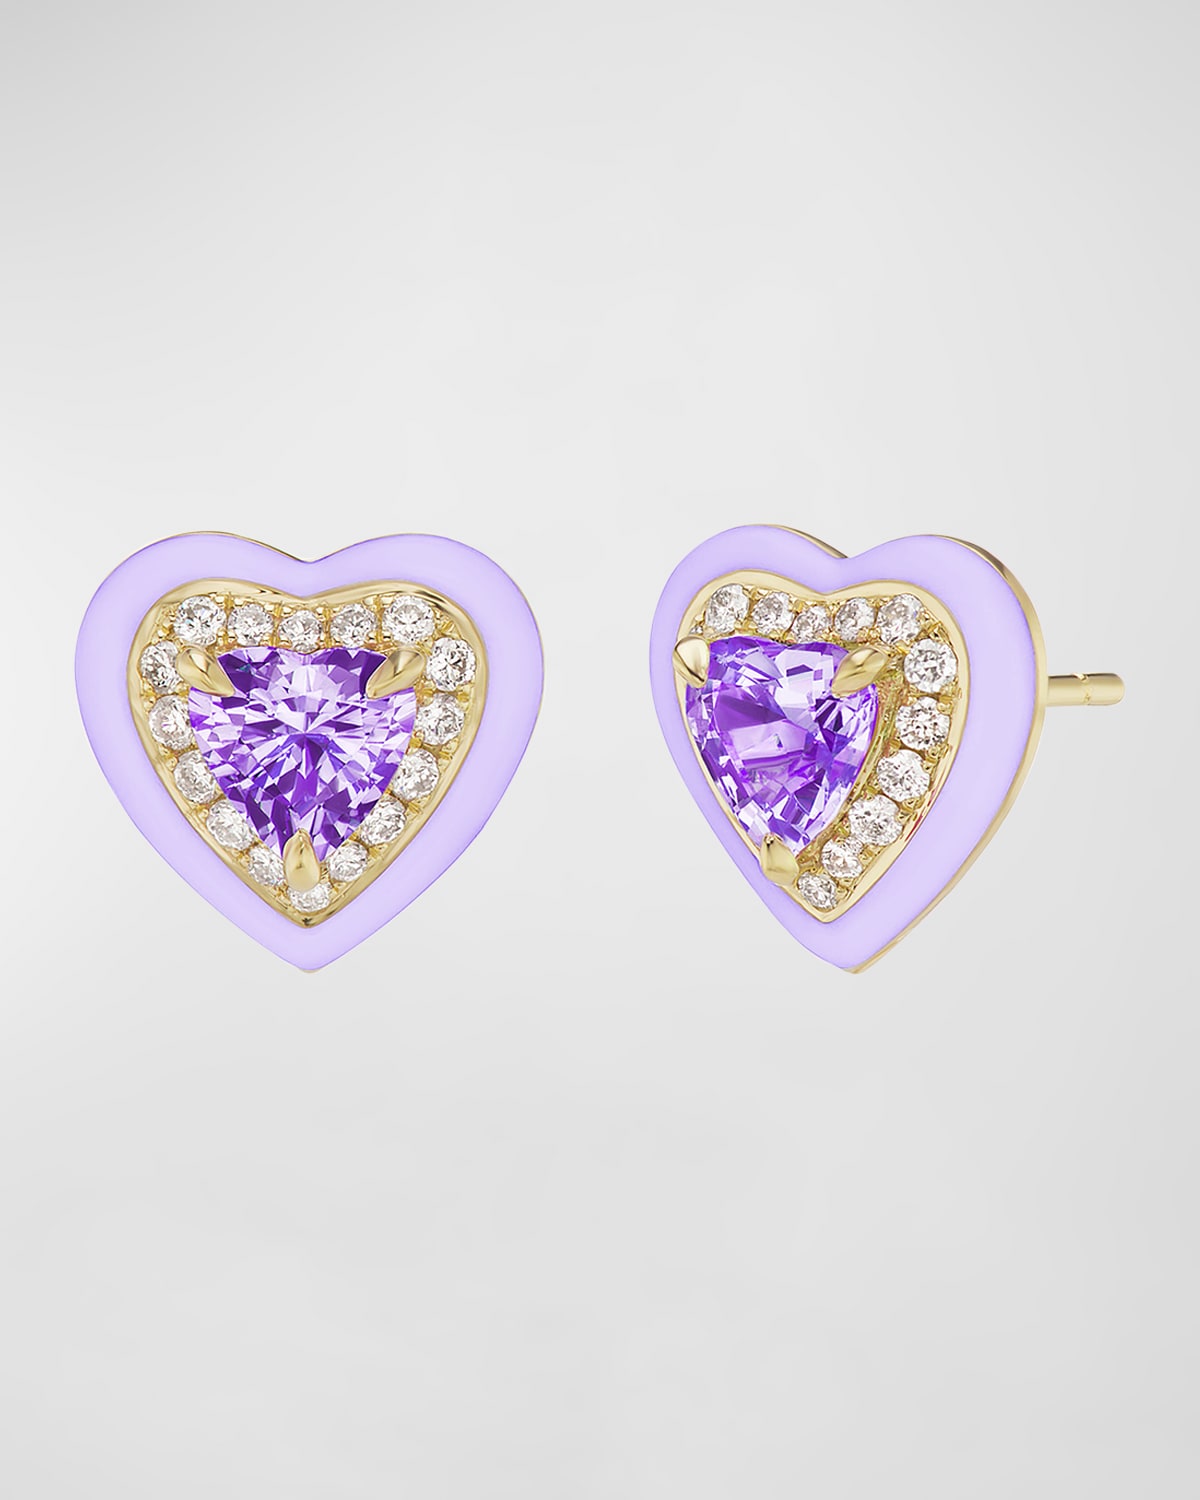 18K Yellow Gold Diamond, Enamel, and Amethyst Heart Stud Earrings